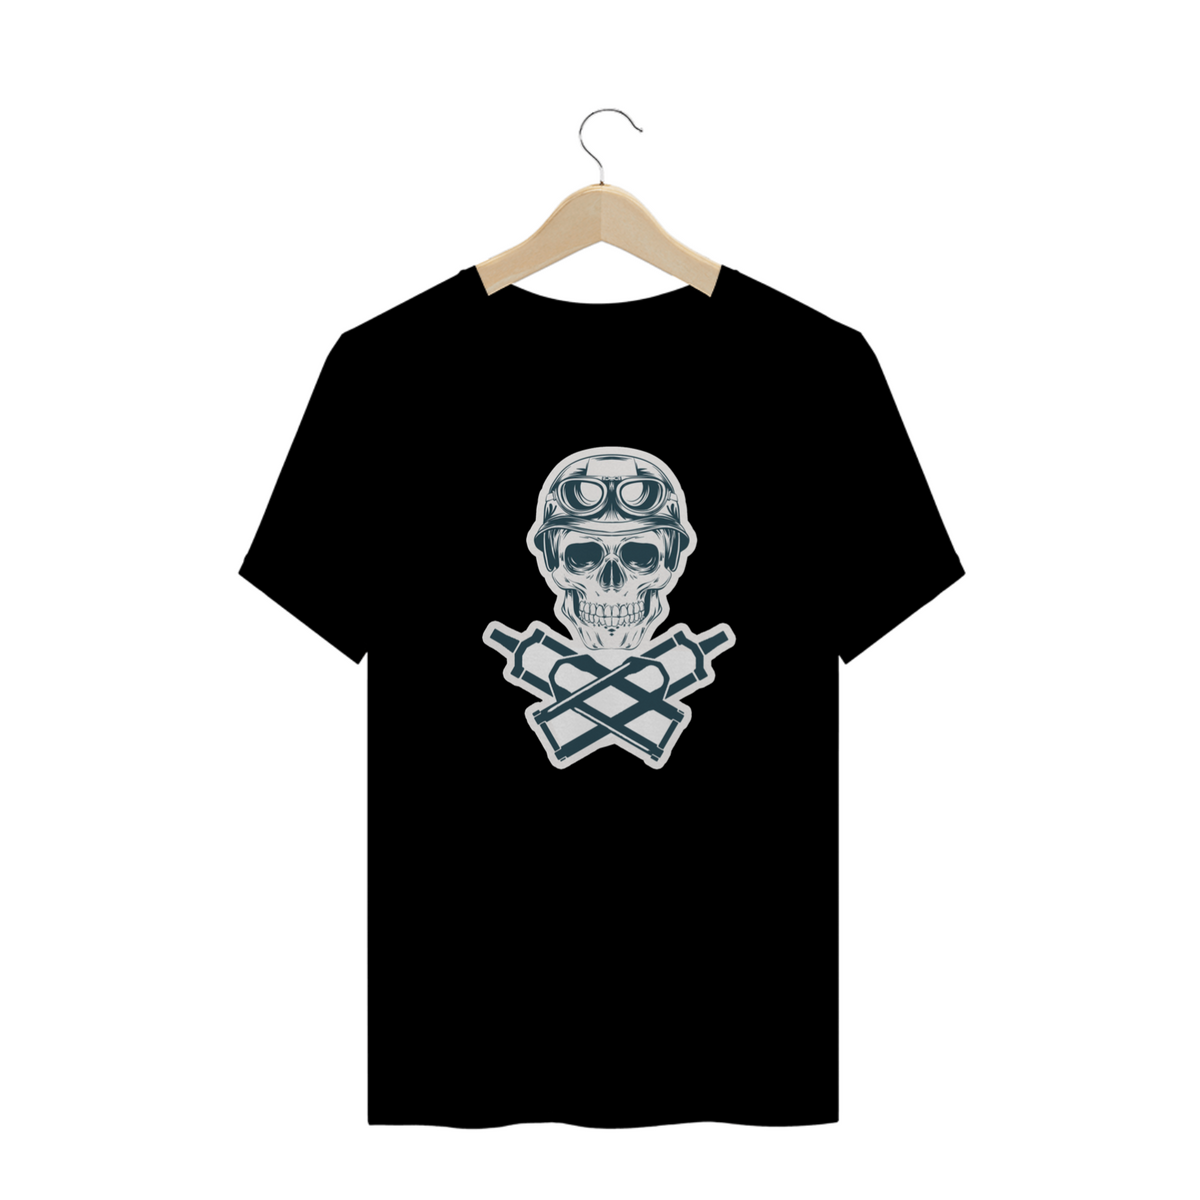 Nome do produto: T-Shirt Skull Biker